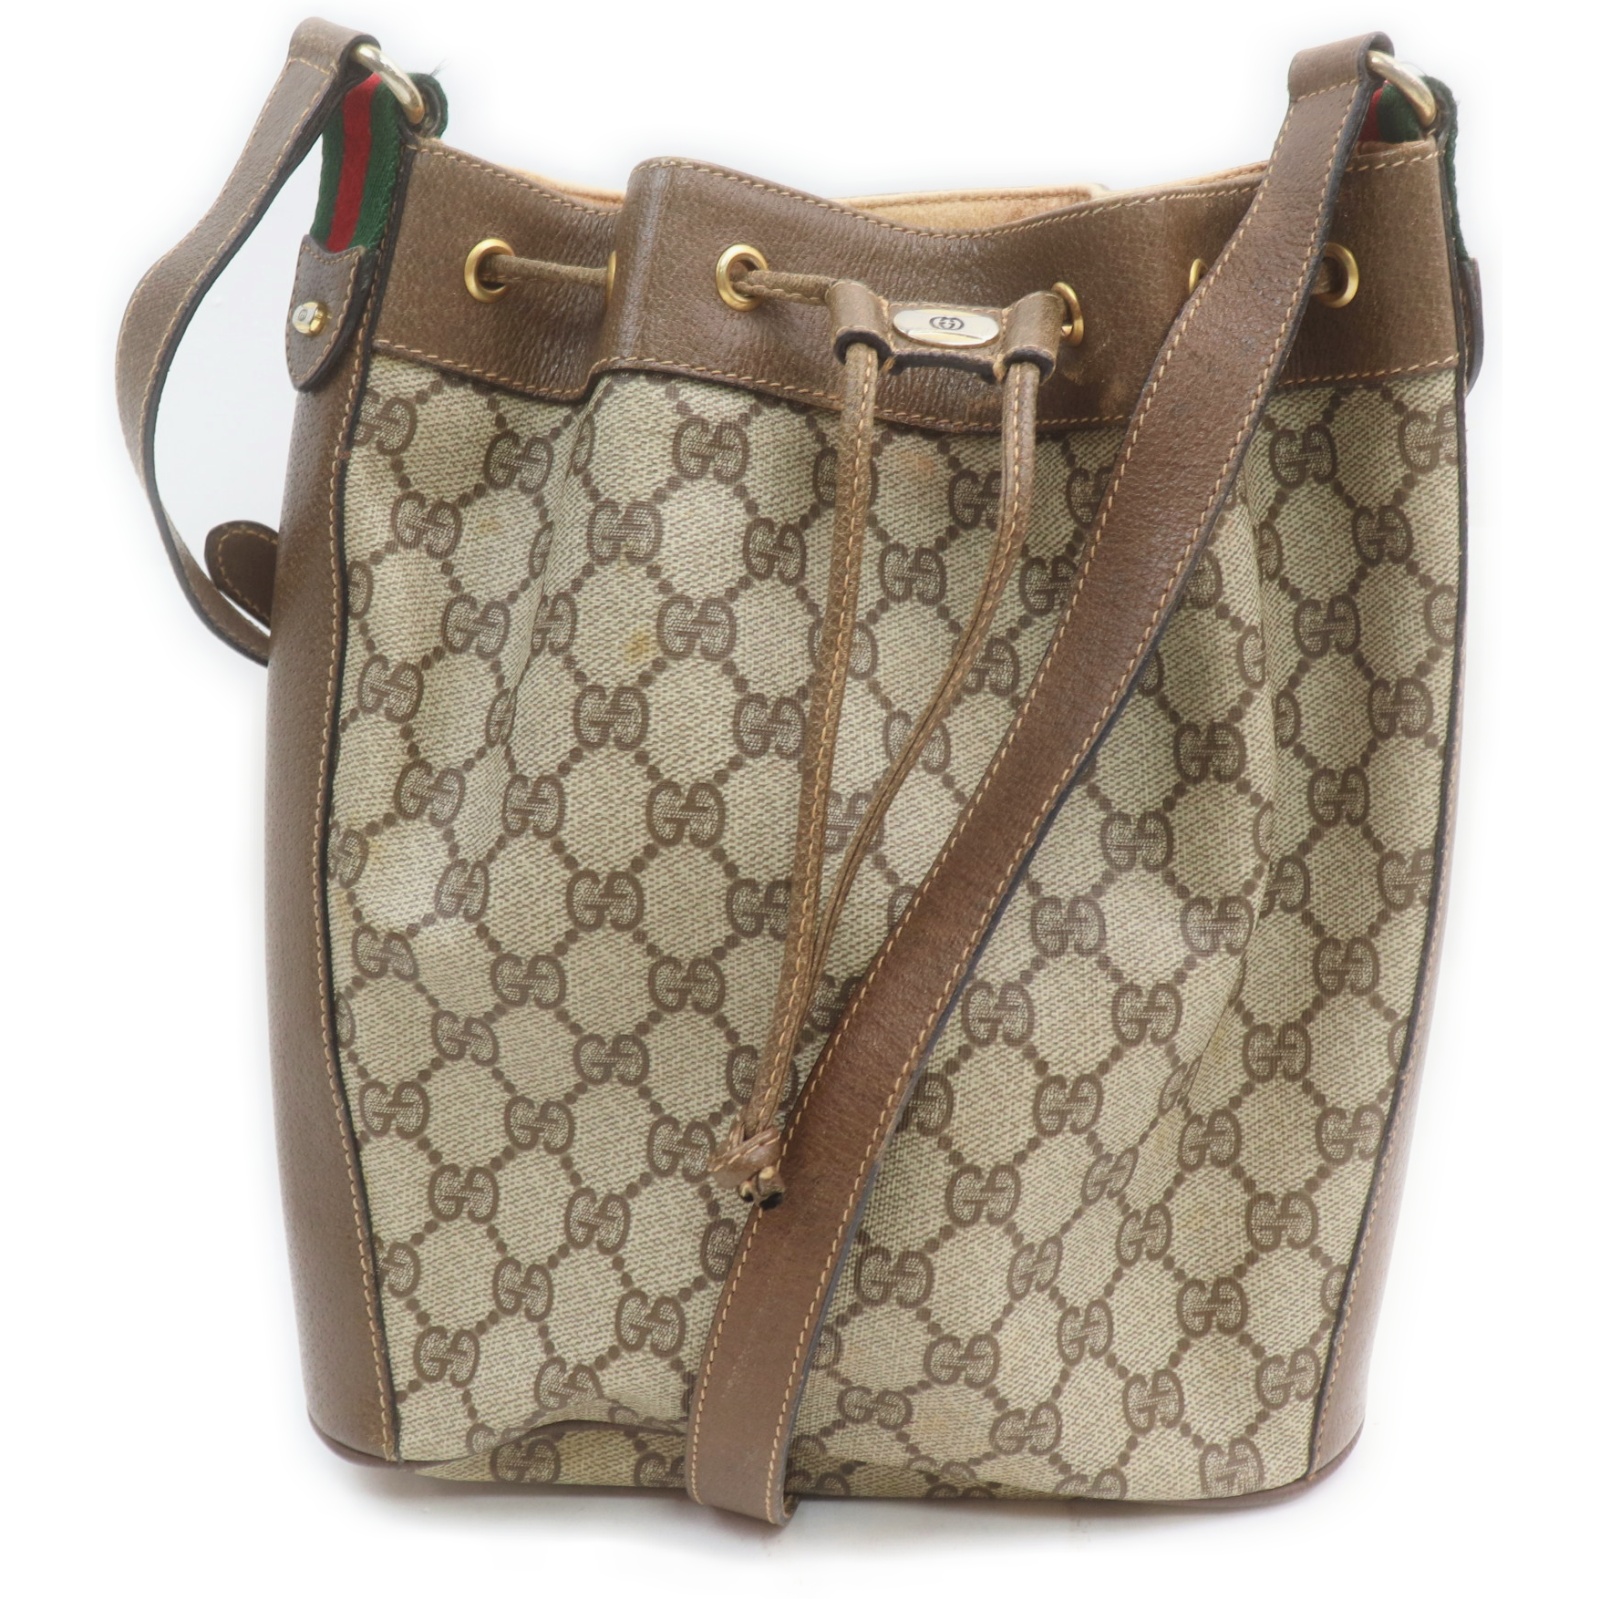 Gucci Shoulder Bag Browns PVC 1518281 | eBay